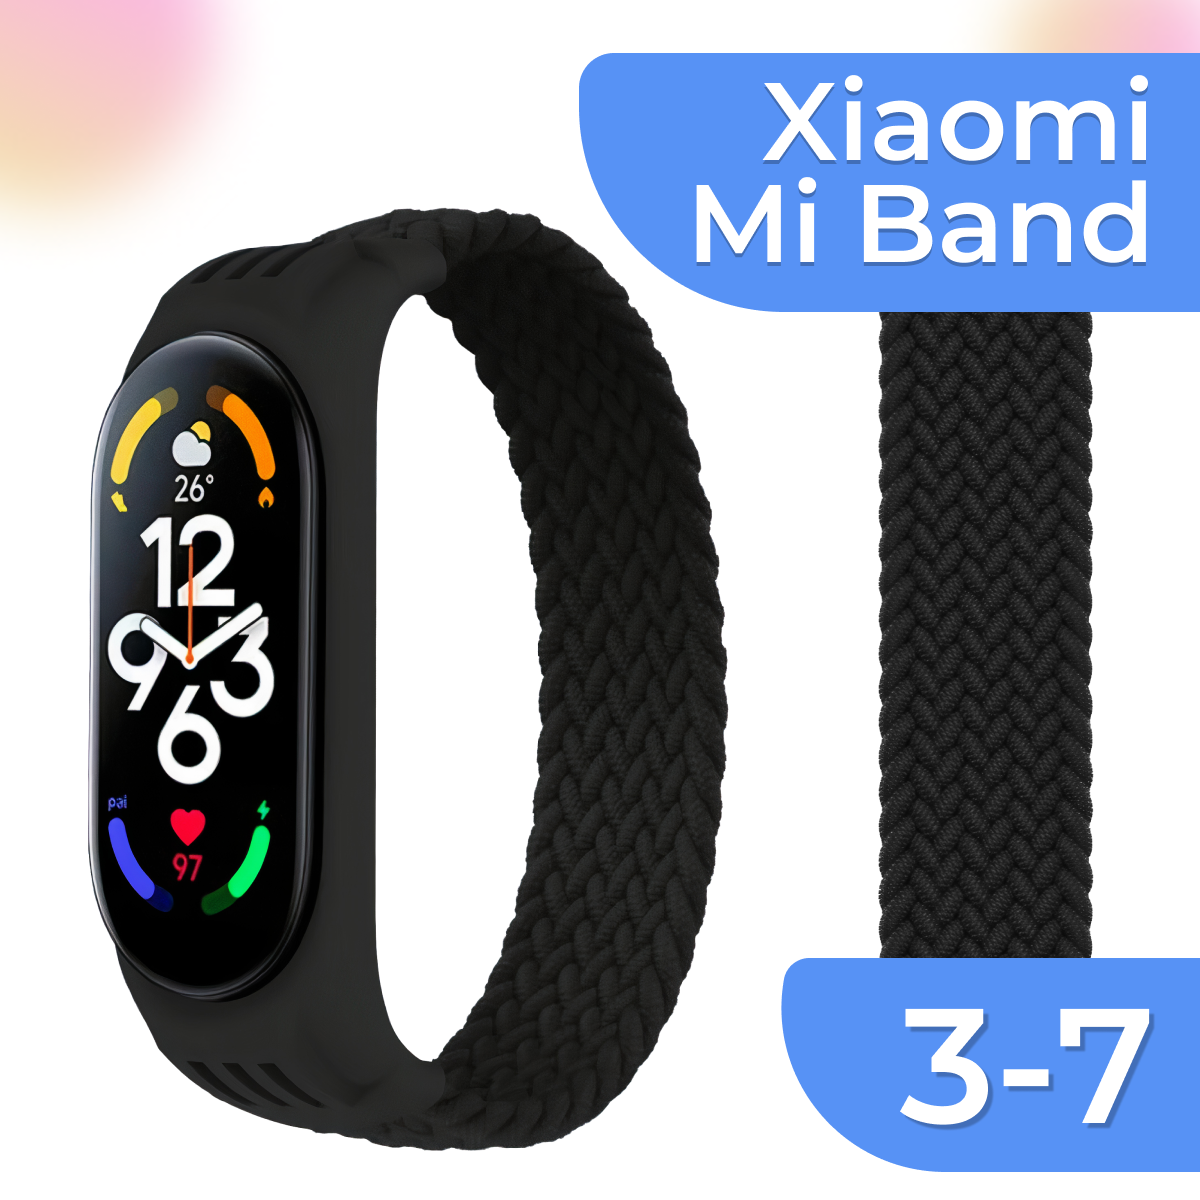 Нейлоновый ремешок для умных смарт часов Xiaomi Mi Band 3, 4, 5, 6 и 7 / Тканевый плетеный монобраслет на фитнес-трекера Сяоми Ми Бэнд 3, 4, 5, 6 и 7 / Черный